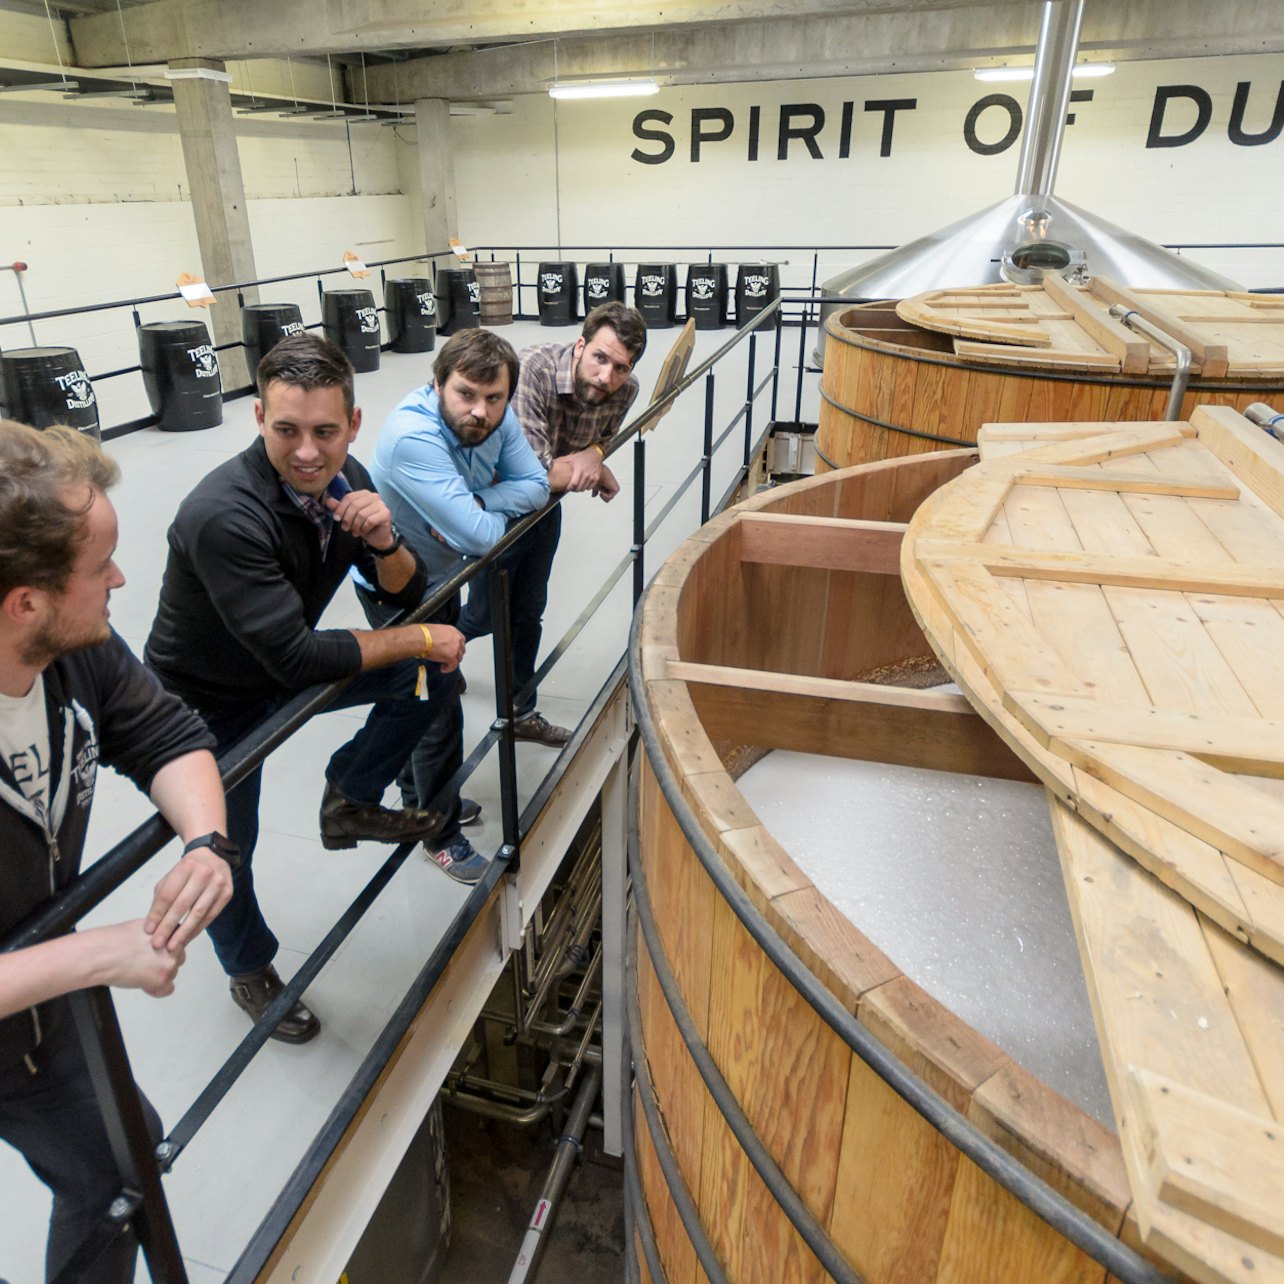 Destilería de Whisky Teeling :Cata y visita guiada - Alojamientos en Dublín